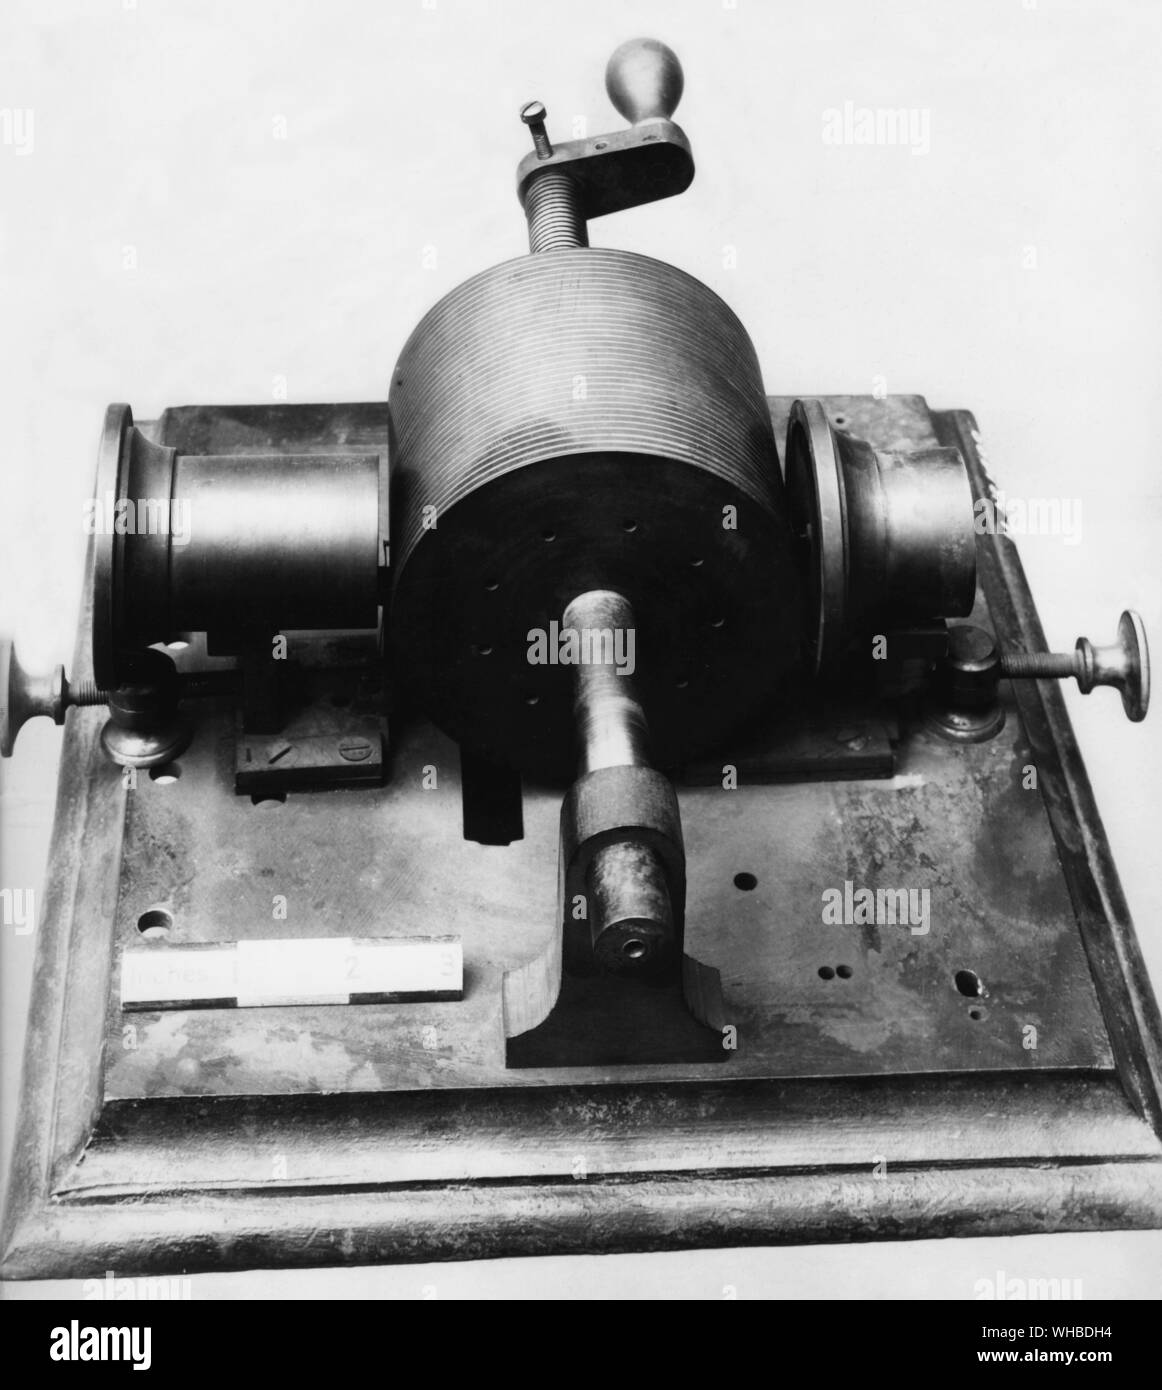 Edisons Phonograph wurde als Ergebnis von Thomas Edison's Arbeit an zwei anderen Erfindungen entwickelt, den Telegrafen und das Telefon. 1877, Edison arbeitete an einer Maschine, die telegrafische Nachrichten durch Vertiefungen auf Papier, die später über den Fernschreiber wiederholt gesendet werden konnte. Diese Entwicklung führte Edison zu spekulieren, dass eine telefonische Nachricht auch in einer ähnlichen Art und Weise aufgenommen werden konnten. Er mit einer Membran mit einer Prägung und war gegen sich schnell bewegenden paraffin Papier statt experimentiert. Die sprechende Schwingungen aus Vertiefungen im Papier. Edison später Stockfoto